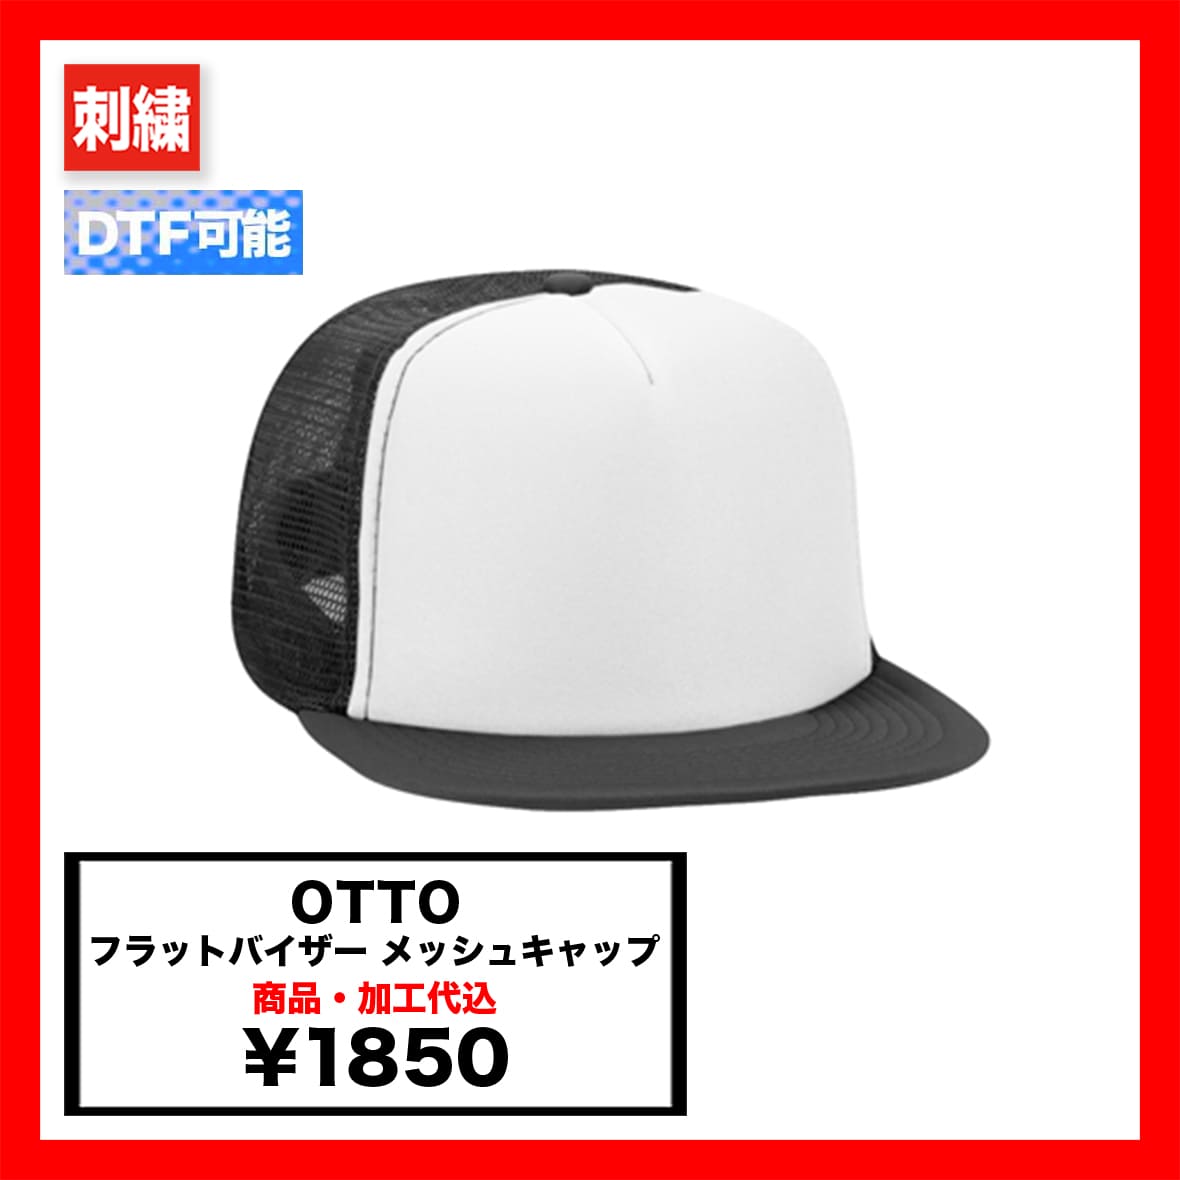 OTTO オットー フラットバイザーメッシュキャップ (品番OTTO-H1037)